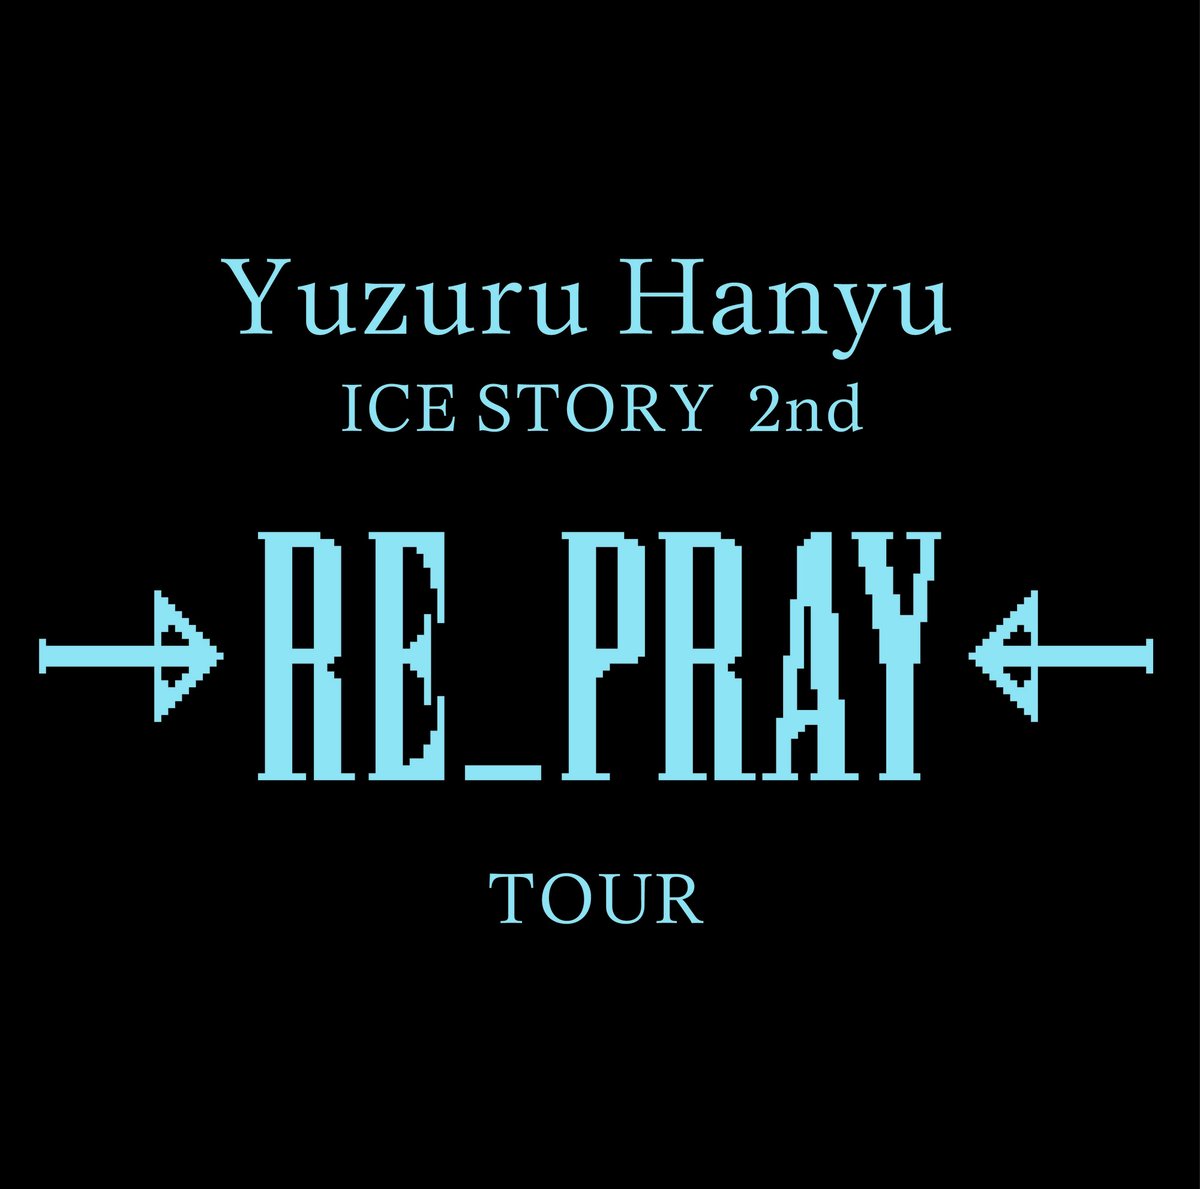 この度雪肌精では
「Yuzuru Hanyu ICE STORY 2nd “RE_PRAY” TOUR」への協賛を決定しました❄

#羽生結弦 選手が出演、MIKIKOさんが演出する
当ツアーは、11月埼玉、翌1月佐賀、2月
横浜でそれぞれ開催されます！

みなさまお楽しみに✨
#RE_PRAY